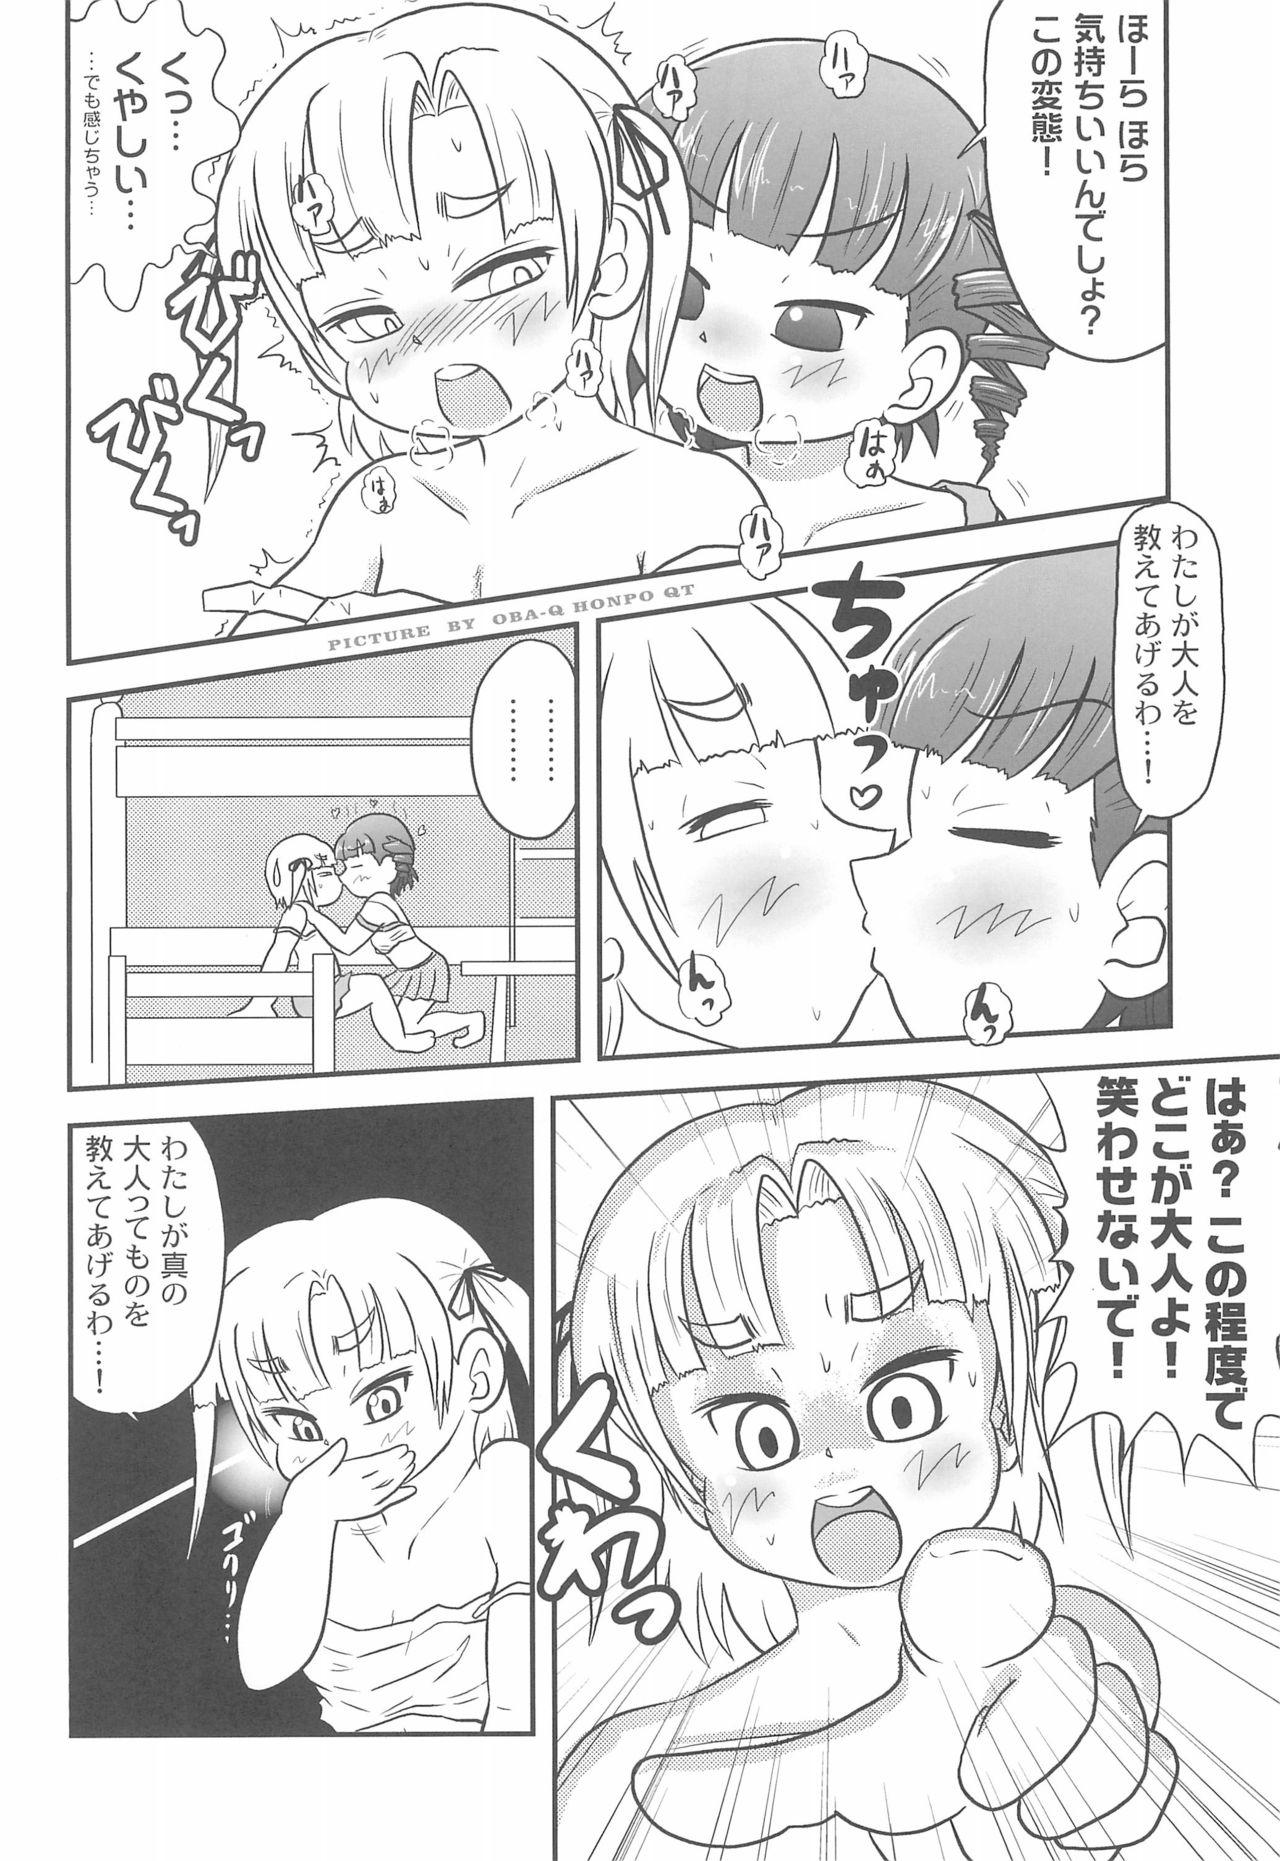 Milfporn Mitsudomoerohon 2 - Mitsudomoe Homosexual - Page 8